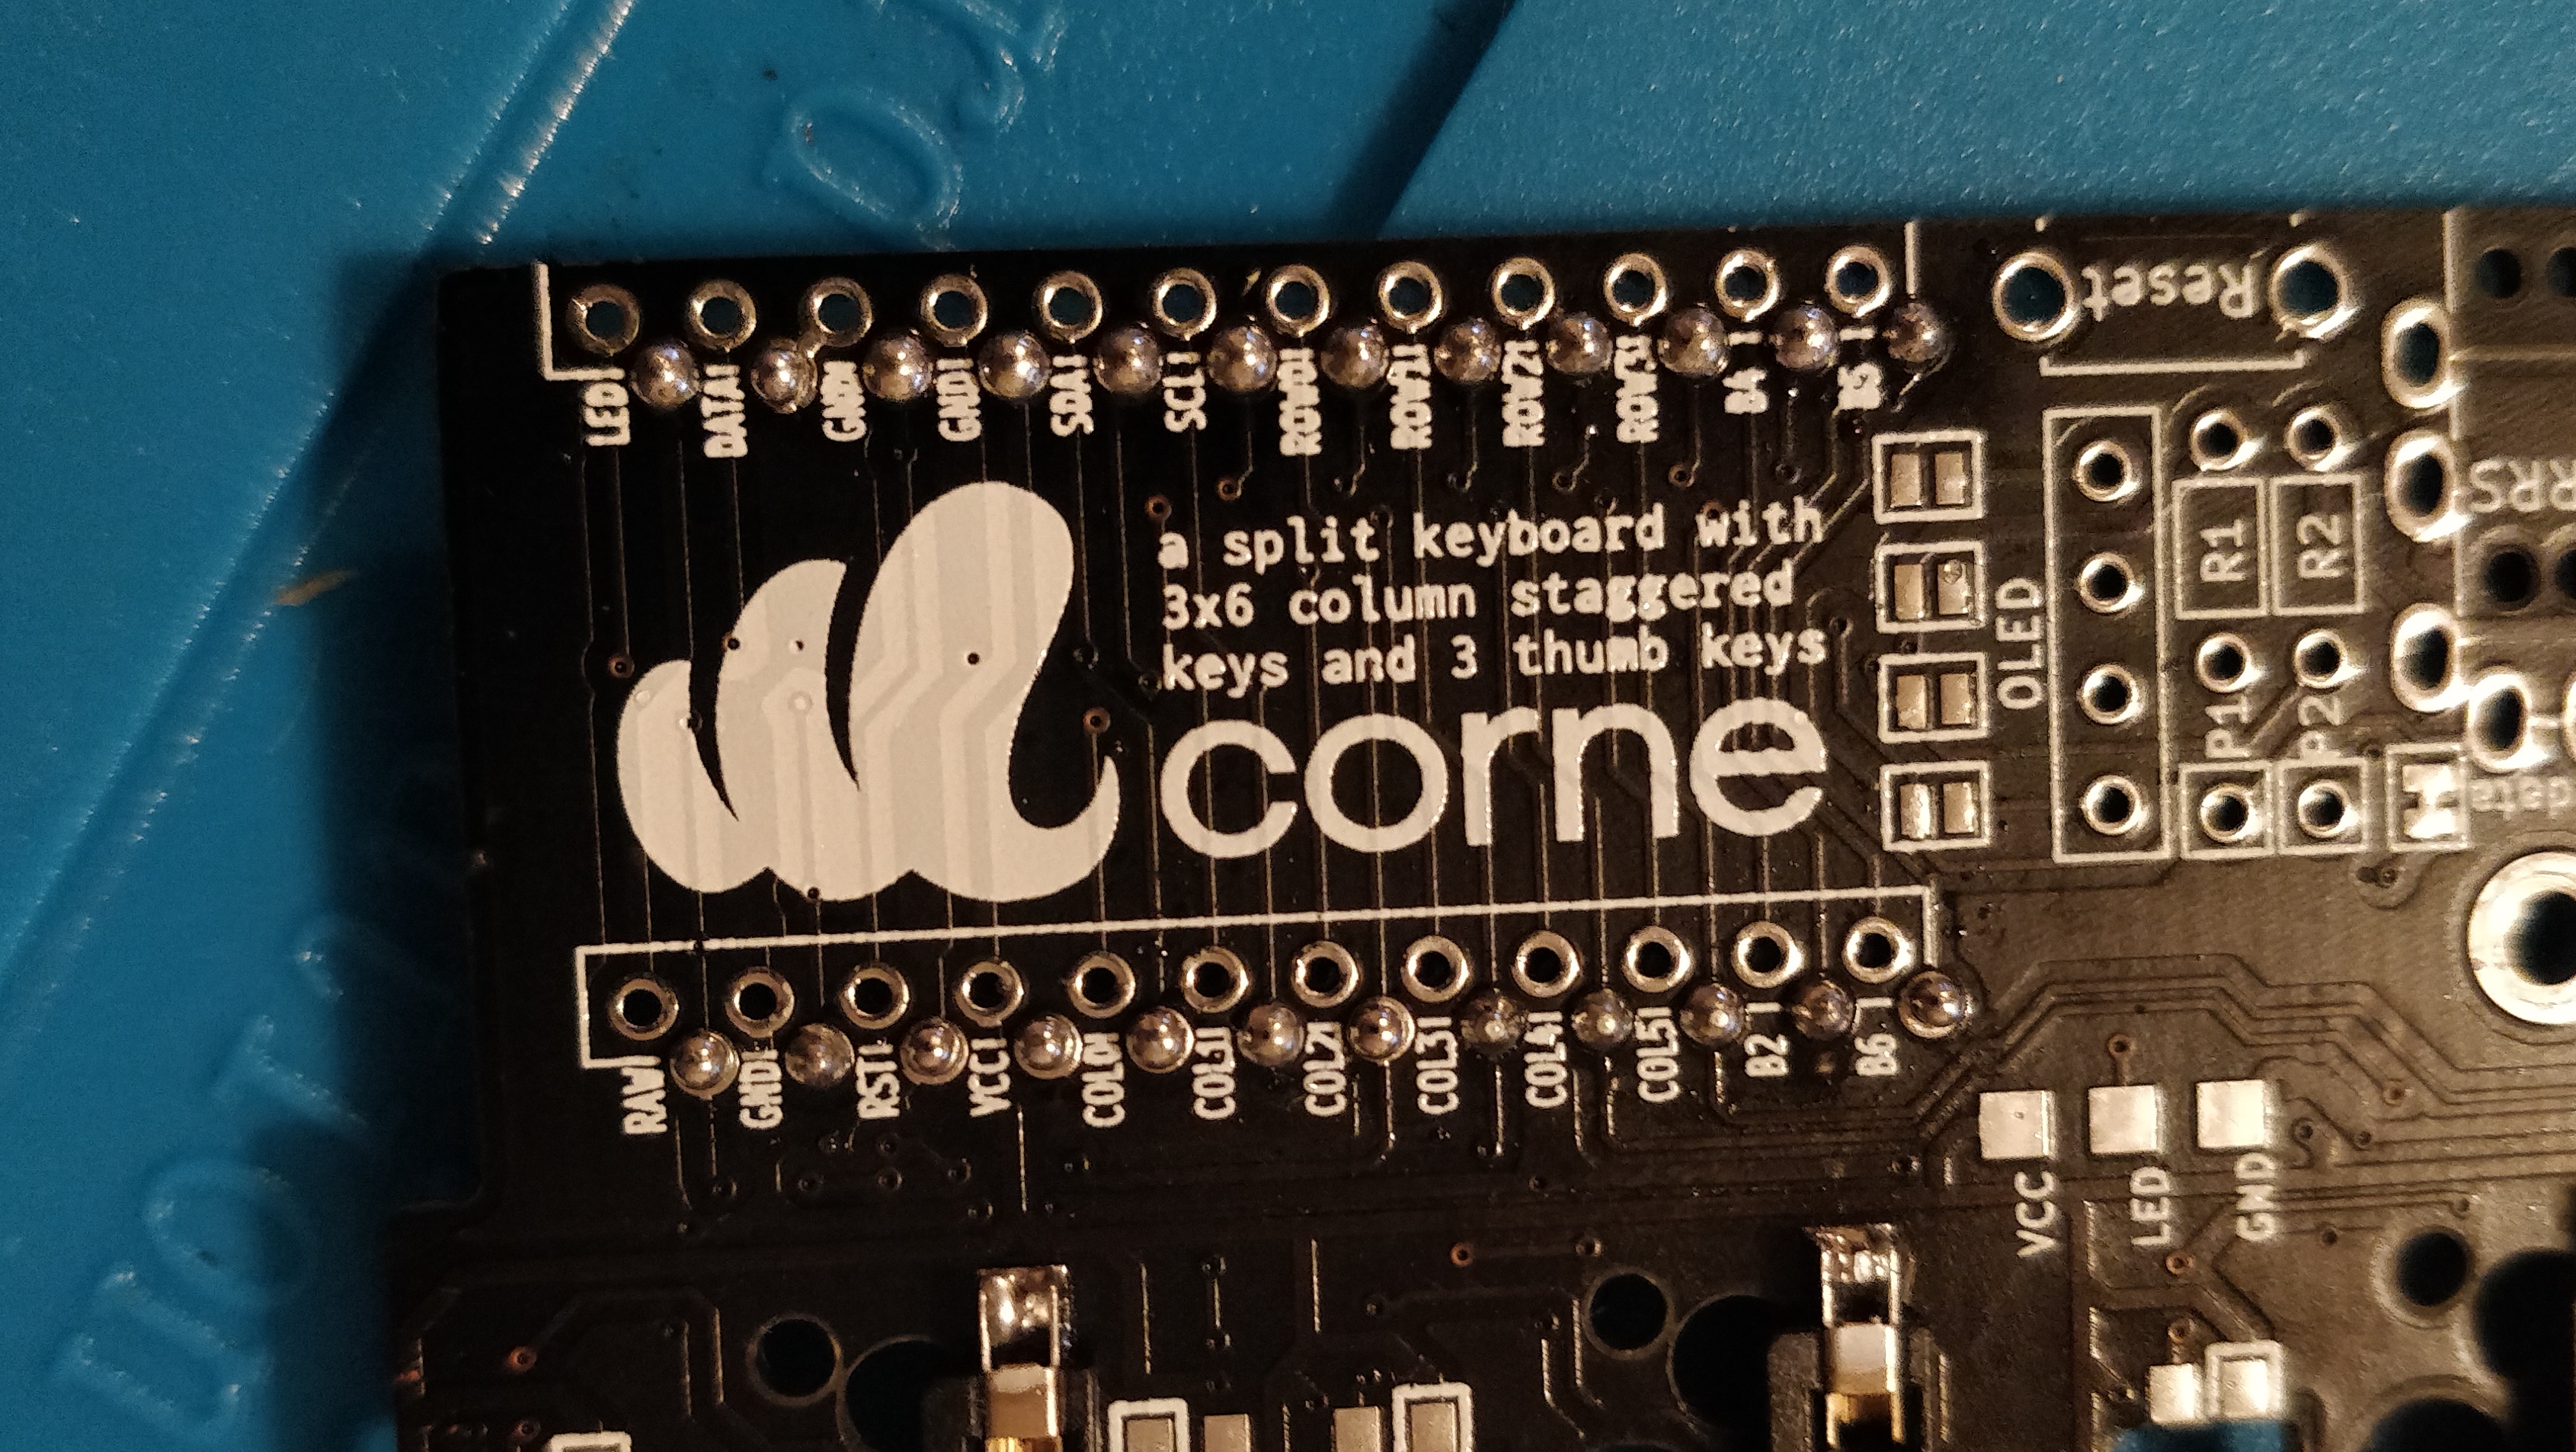 step 8 - corne crkbd - solder microcontroller socket pins